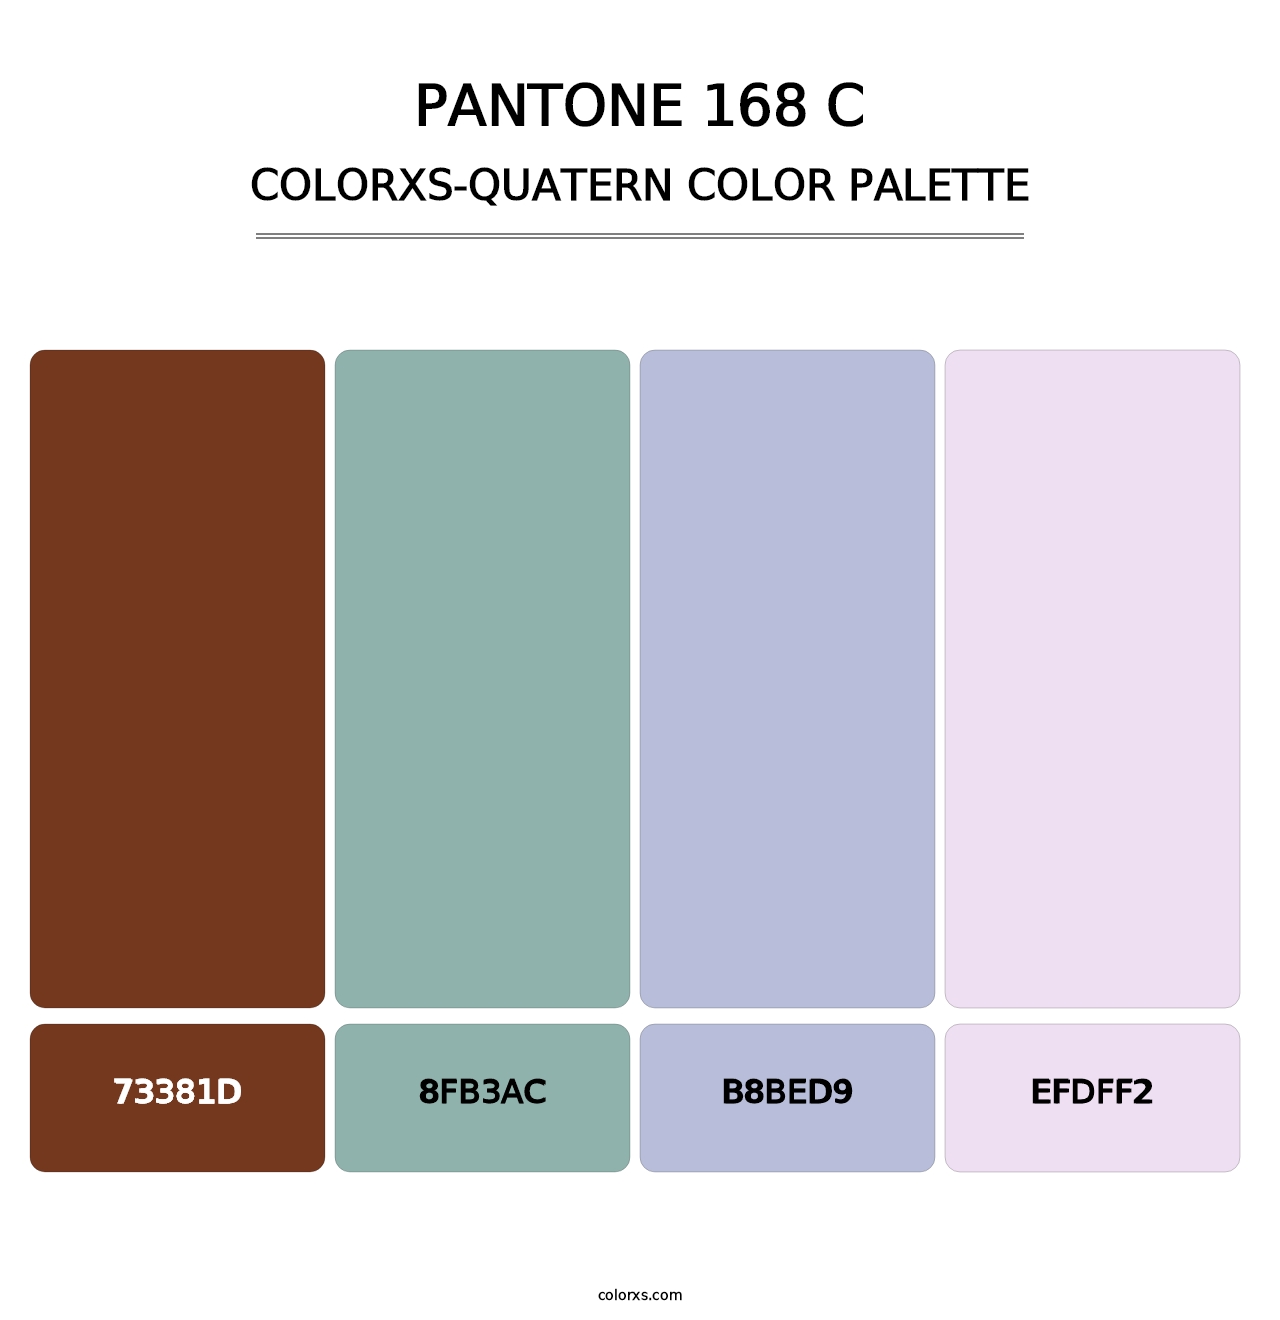 PANTONE 168 C - Colorxs Quatern Palette